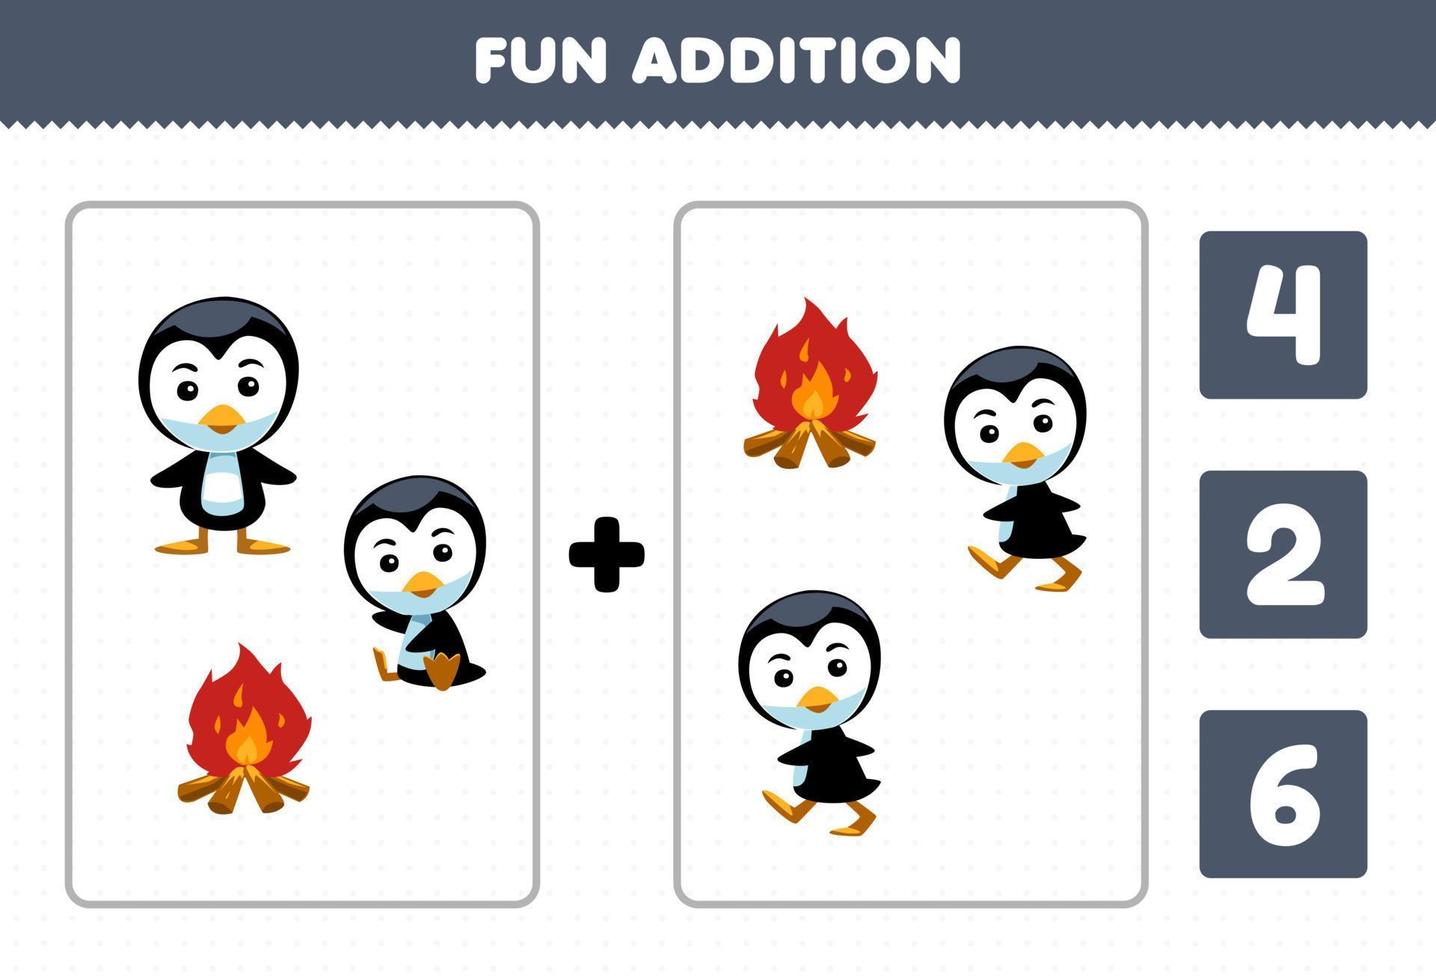 jeu éducatif pour les enfants addition amusante par comptage et choisissez la bonne réponse de dessin animé mignon pingouin et feu de joie feuille de travail imprimable d'hiver vecteur